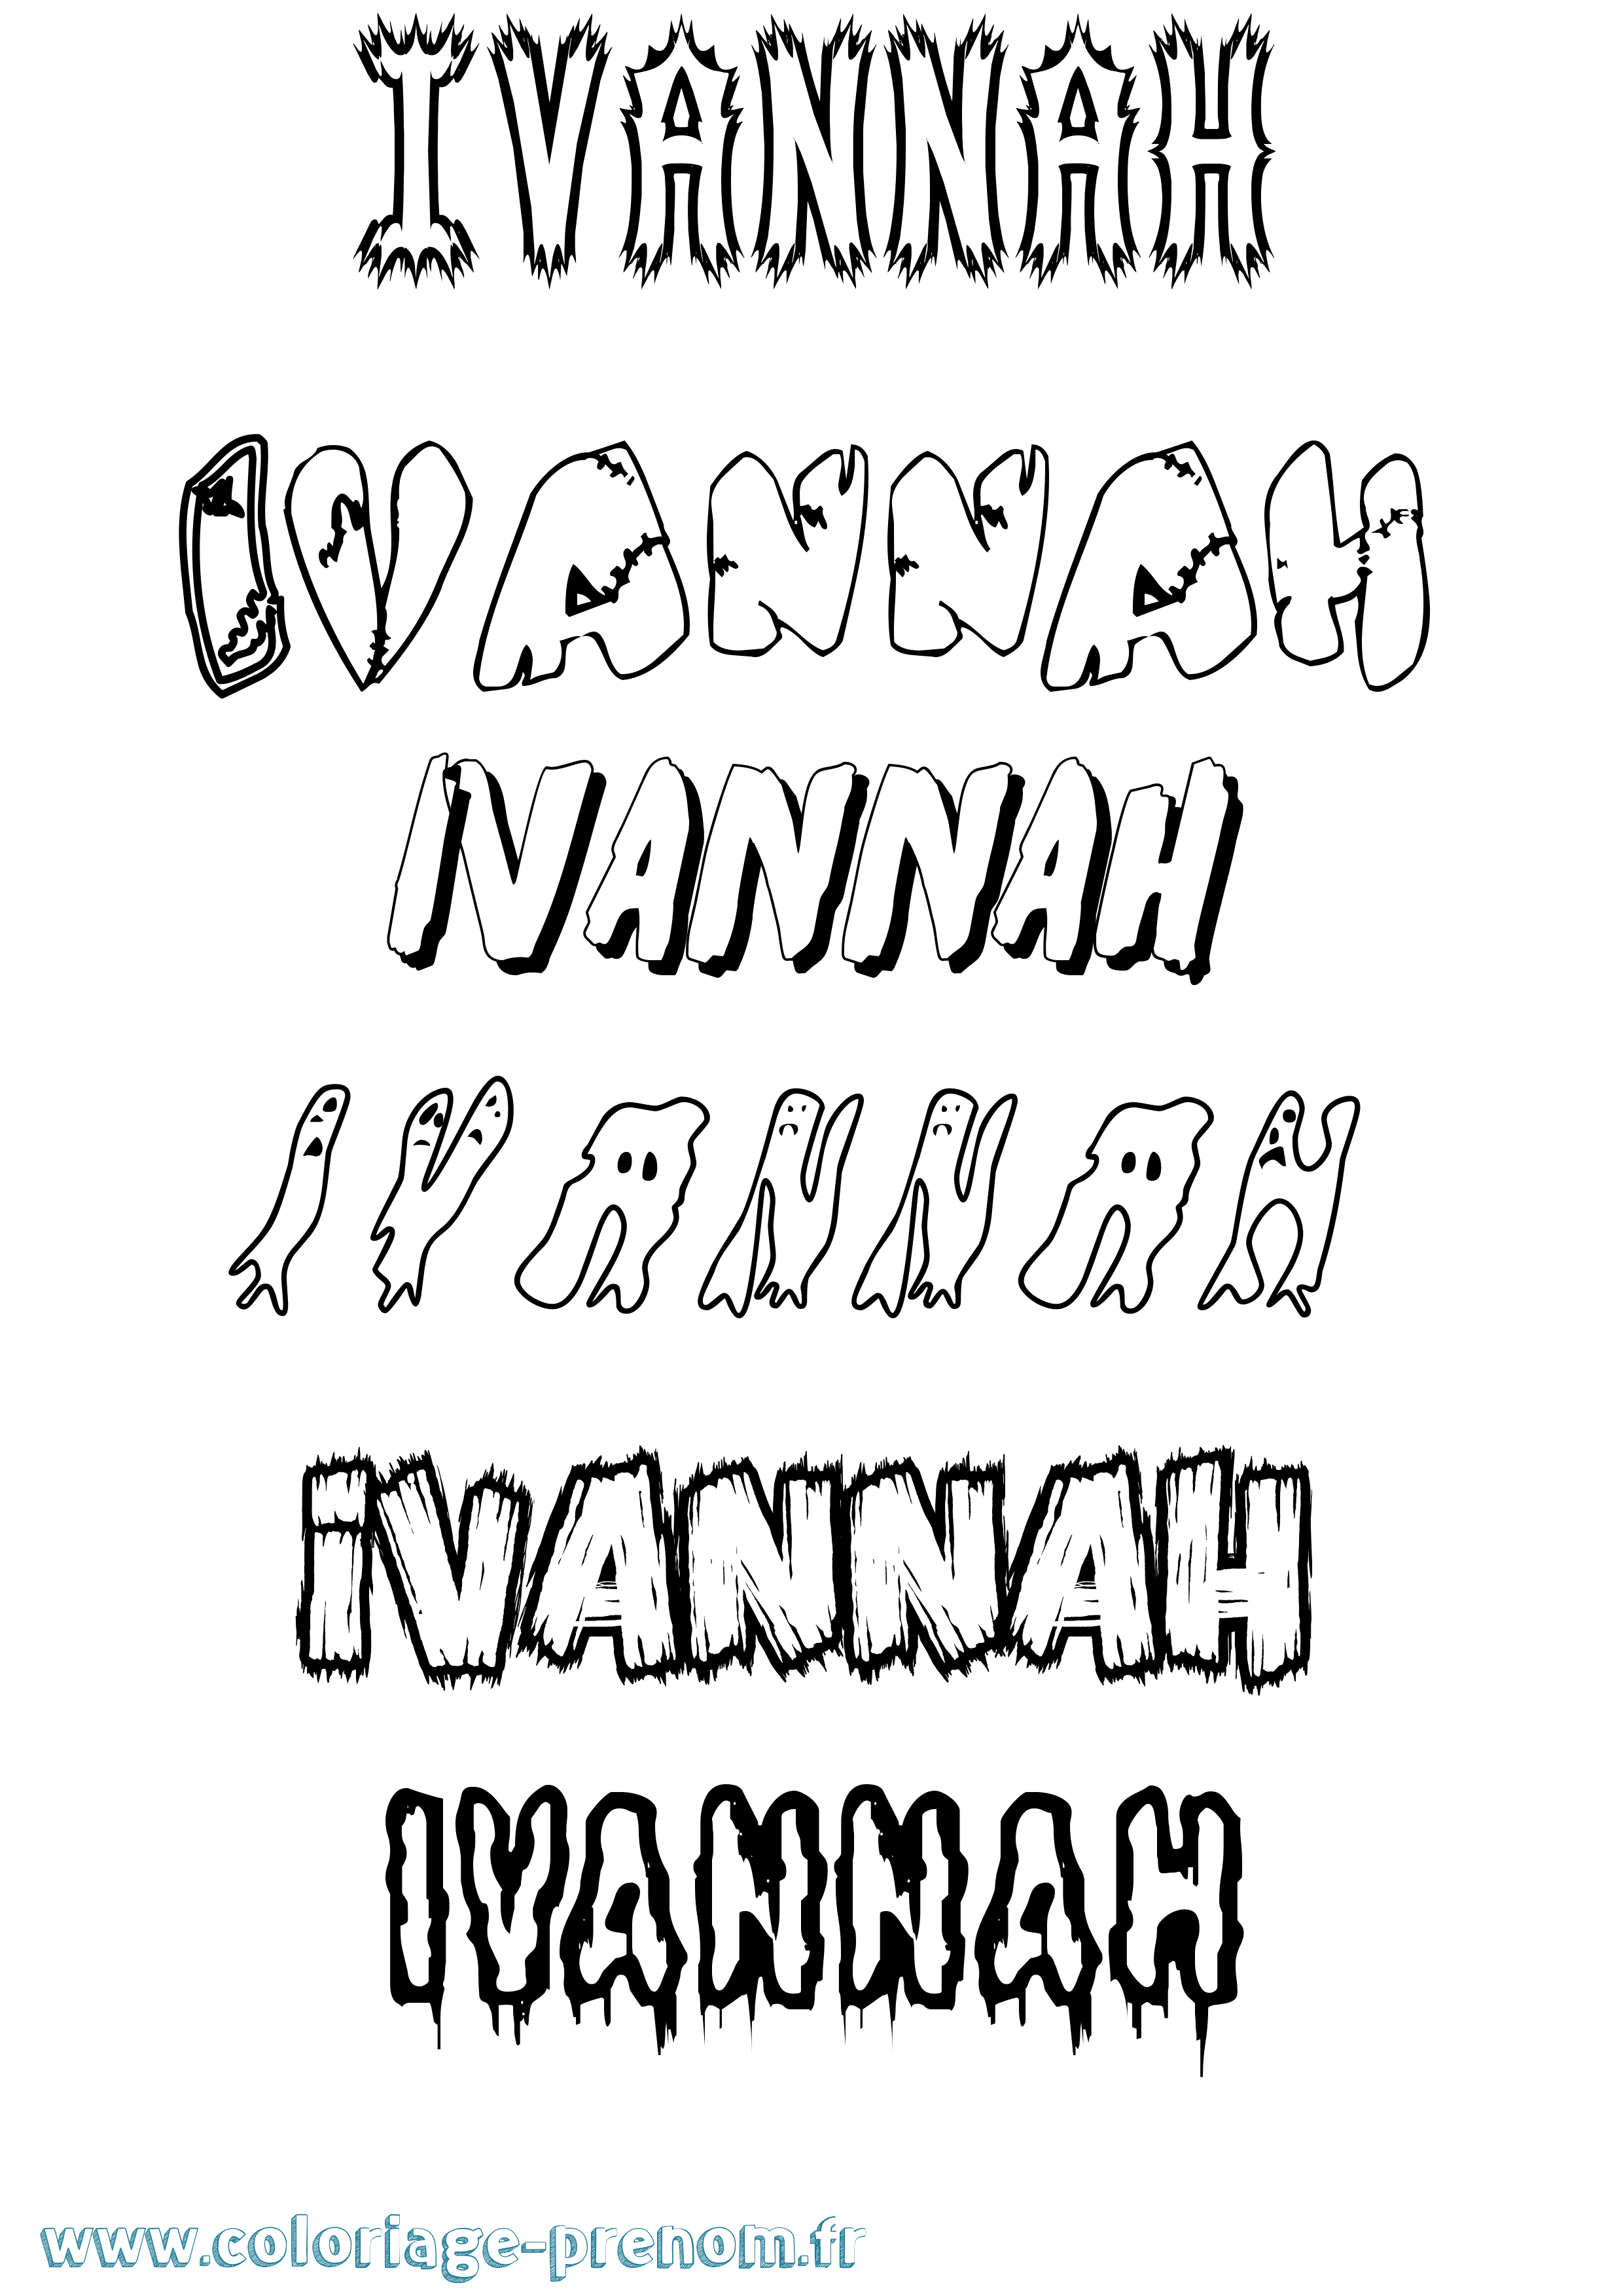 Coloriage prénom Ivannah Frisson